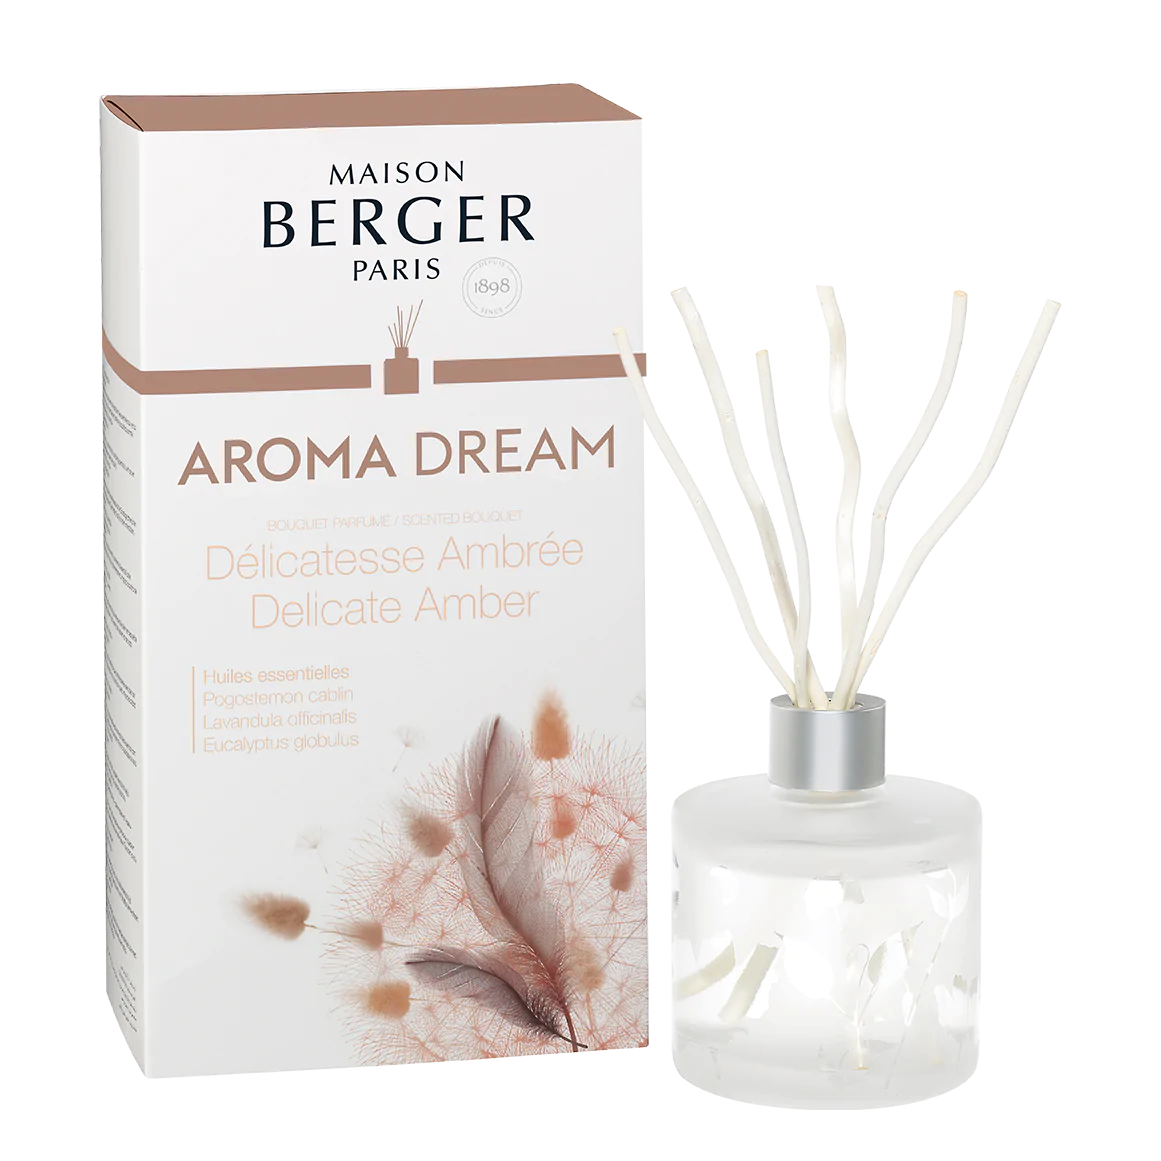 Maison Berger Aroma Dream